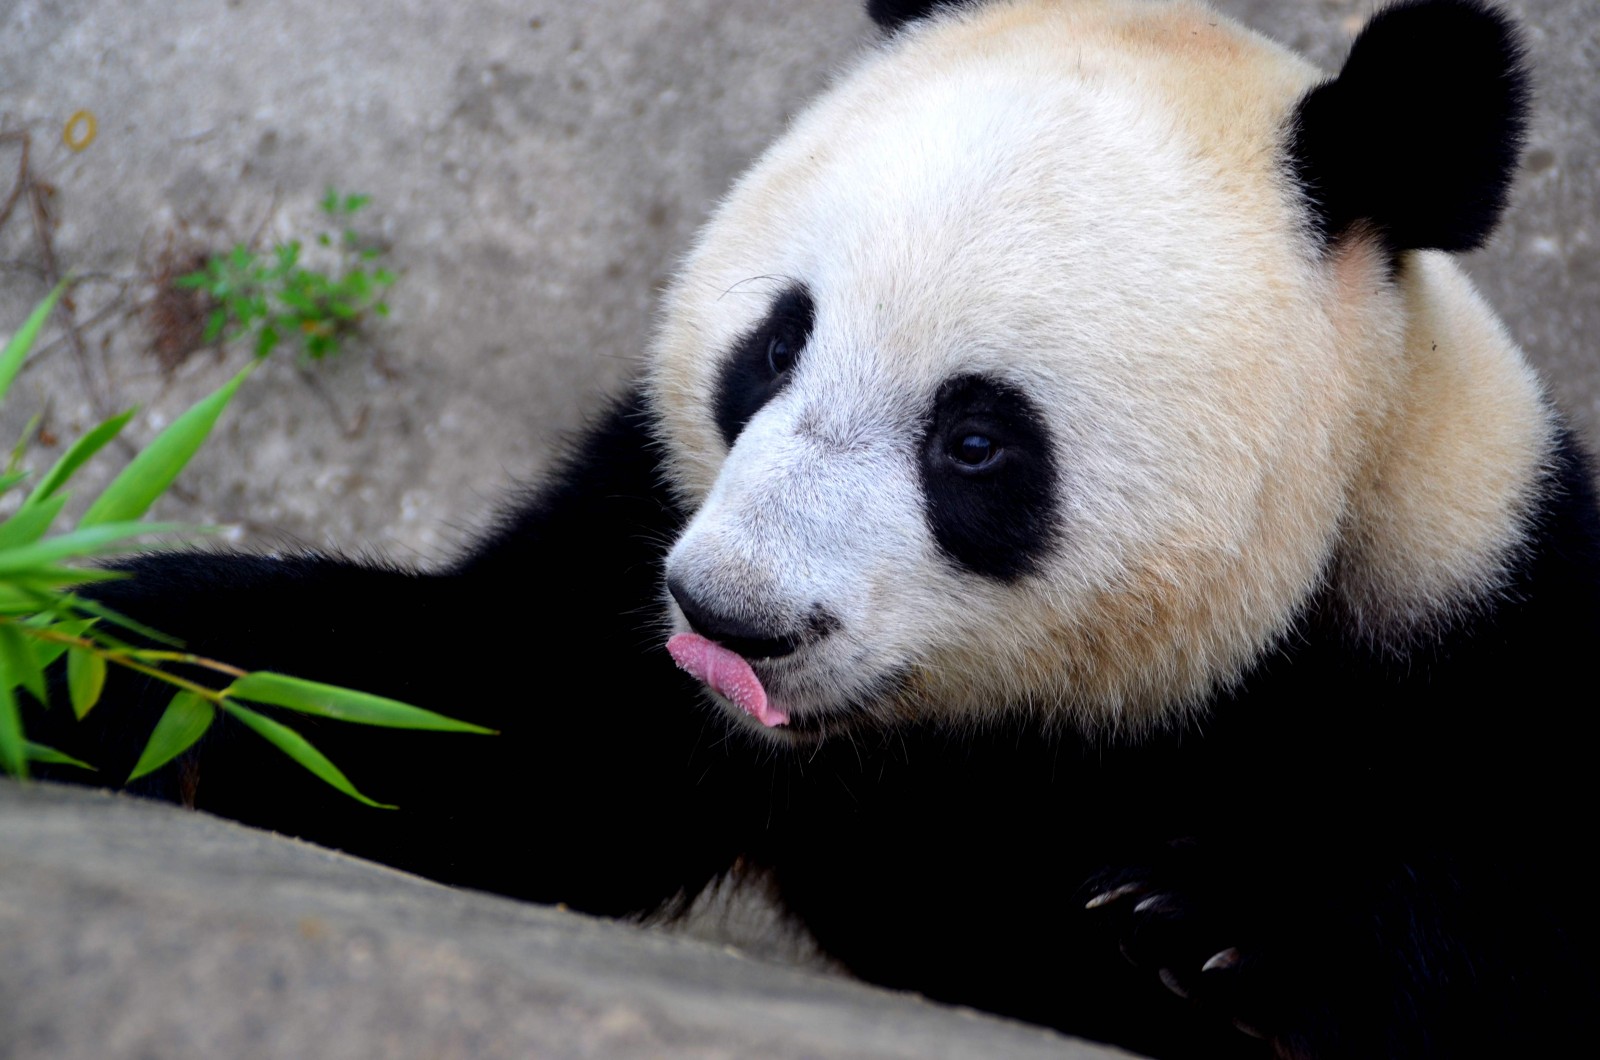 China pandas